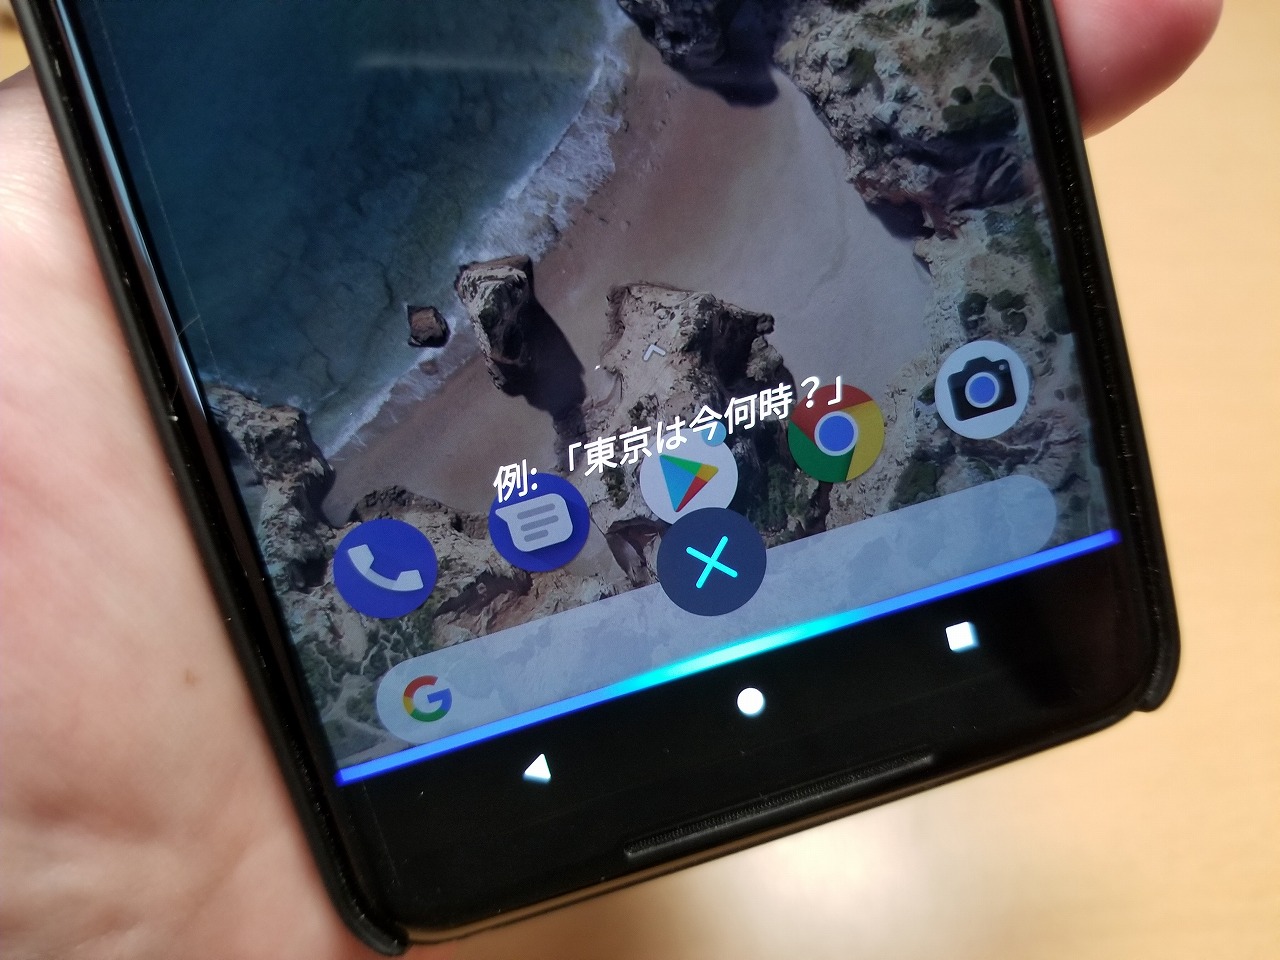 Androidの標準アシスタントとしてalexaが利用可能に ホームボタン長押しで起動可能 Engadget 日本版